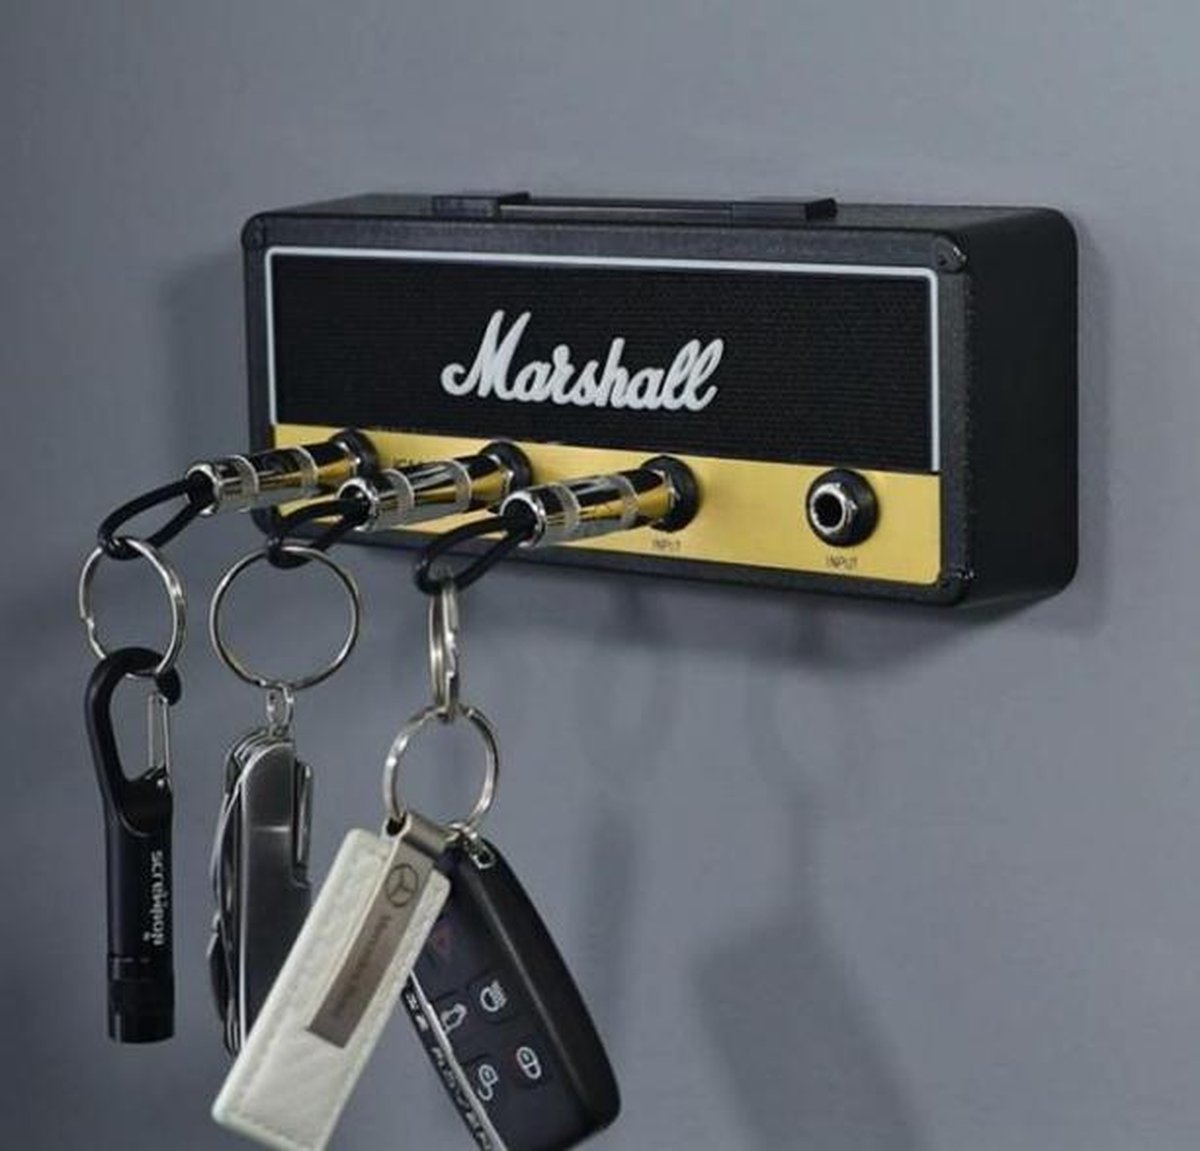 Porte-clés Marshall , porte-clés, mural, armoire à clés JCM800, porte-clés  de guitare